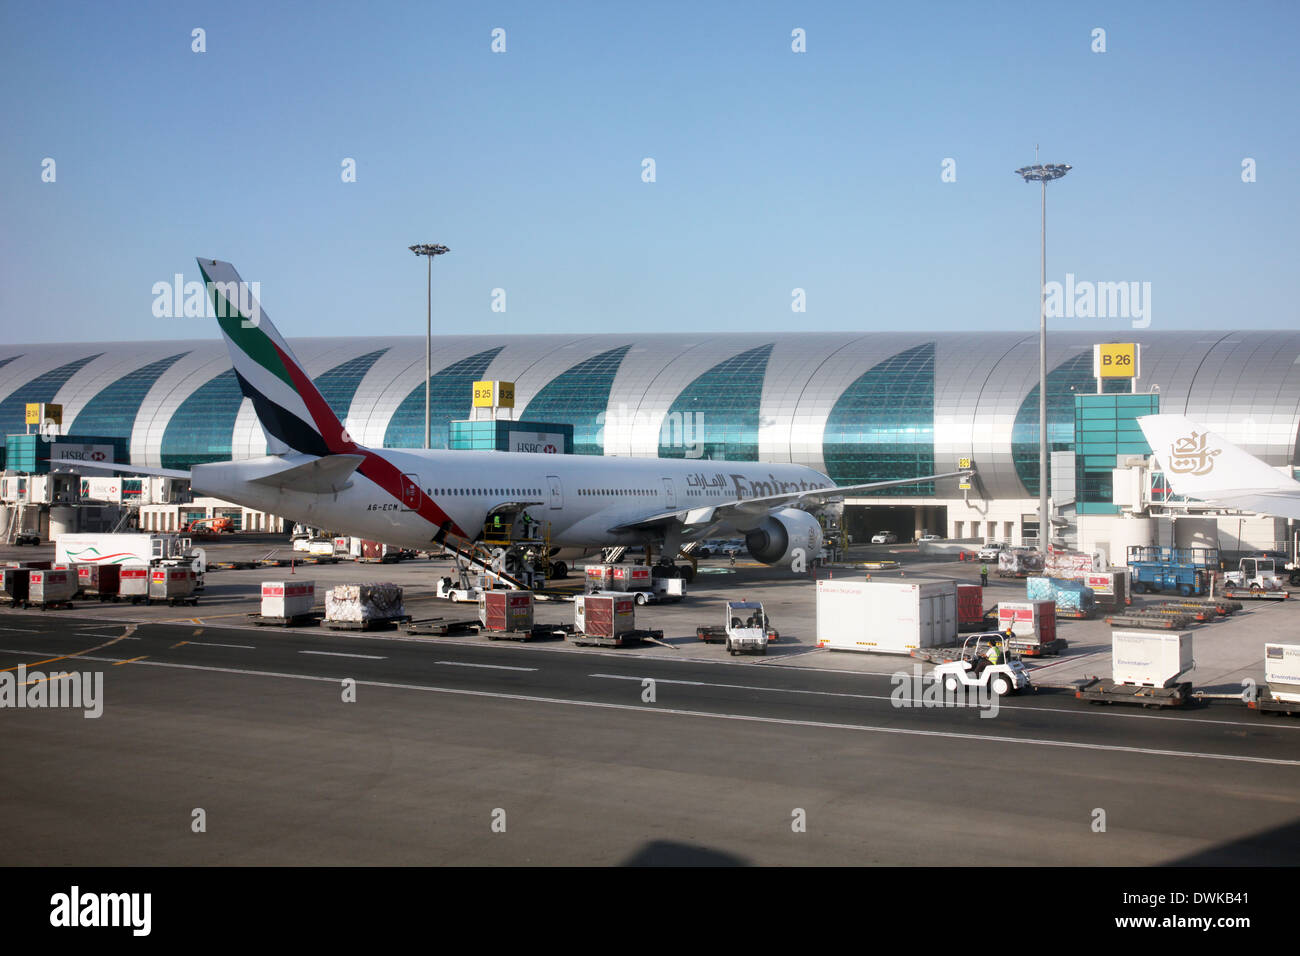 Emirates Airbus A320 at Dubai Airport on December 09, 2012 in Dubai, UAE Stock Photo